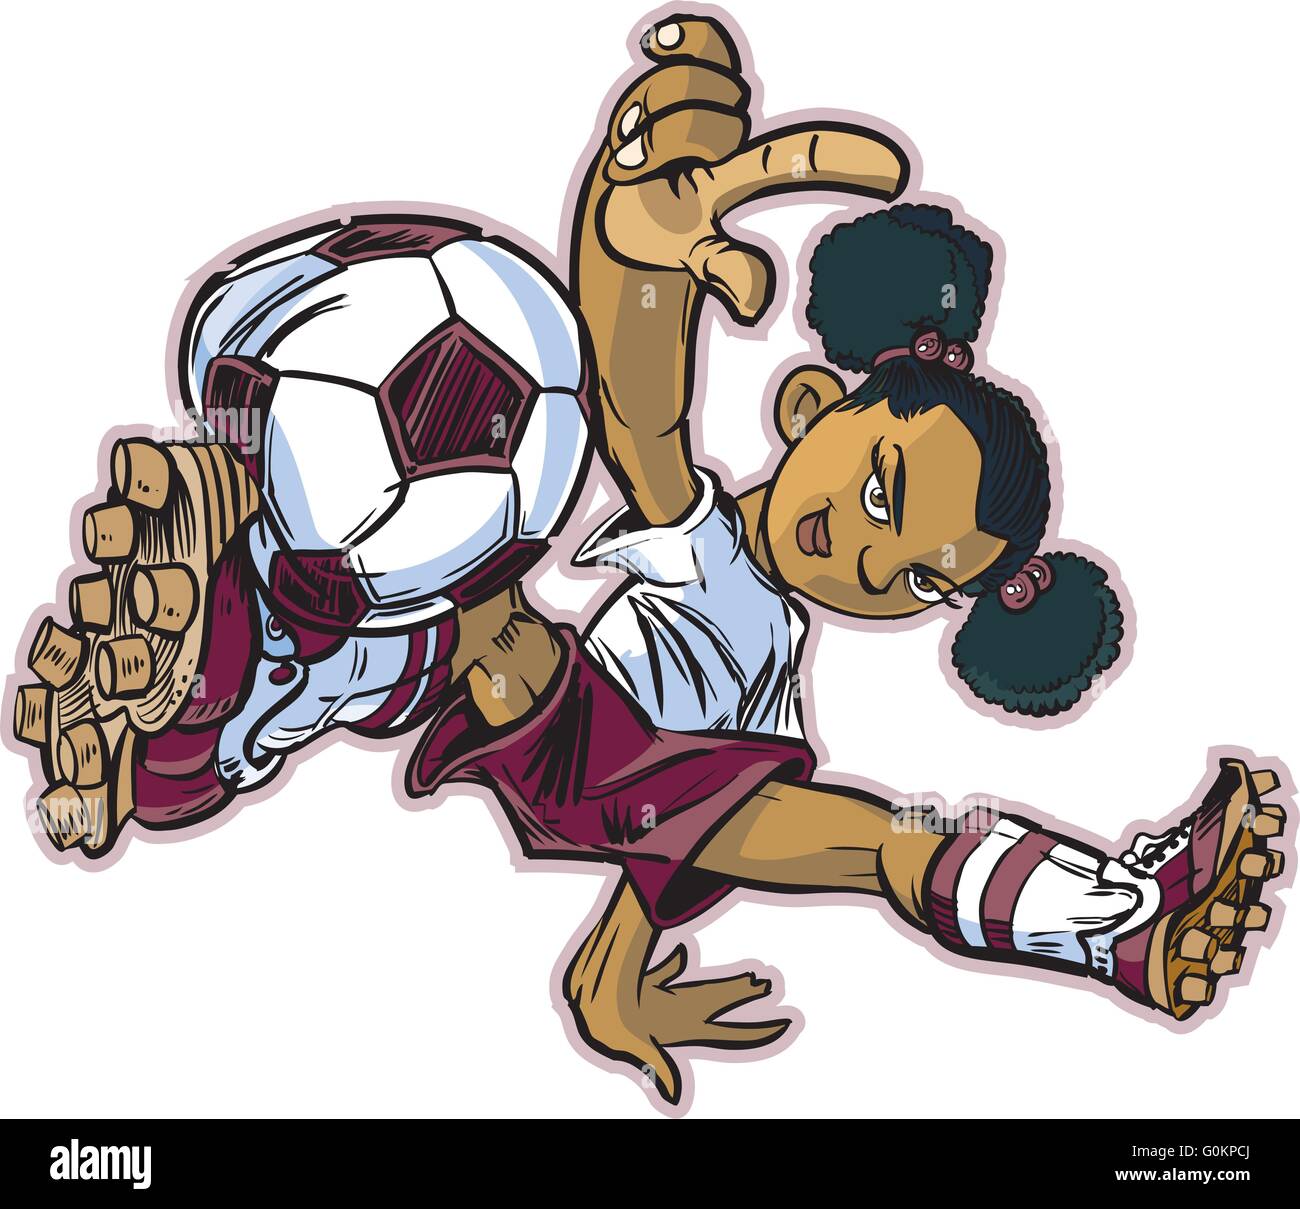 Vektor Clip Art Karikatur eines afrikanischen Mädchens mit einem Breakdance bewegen, Fußball zu spielen. Stock Vektor